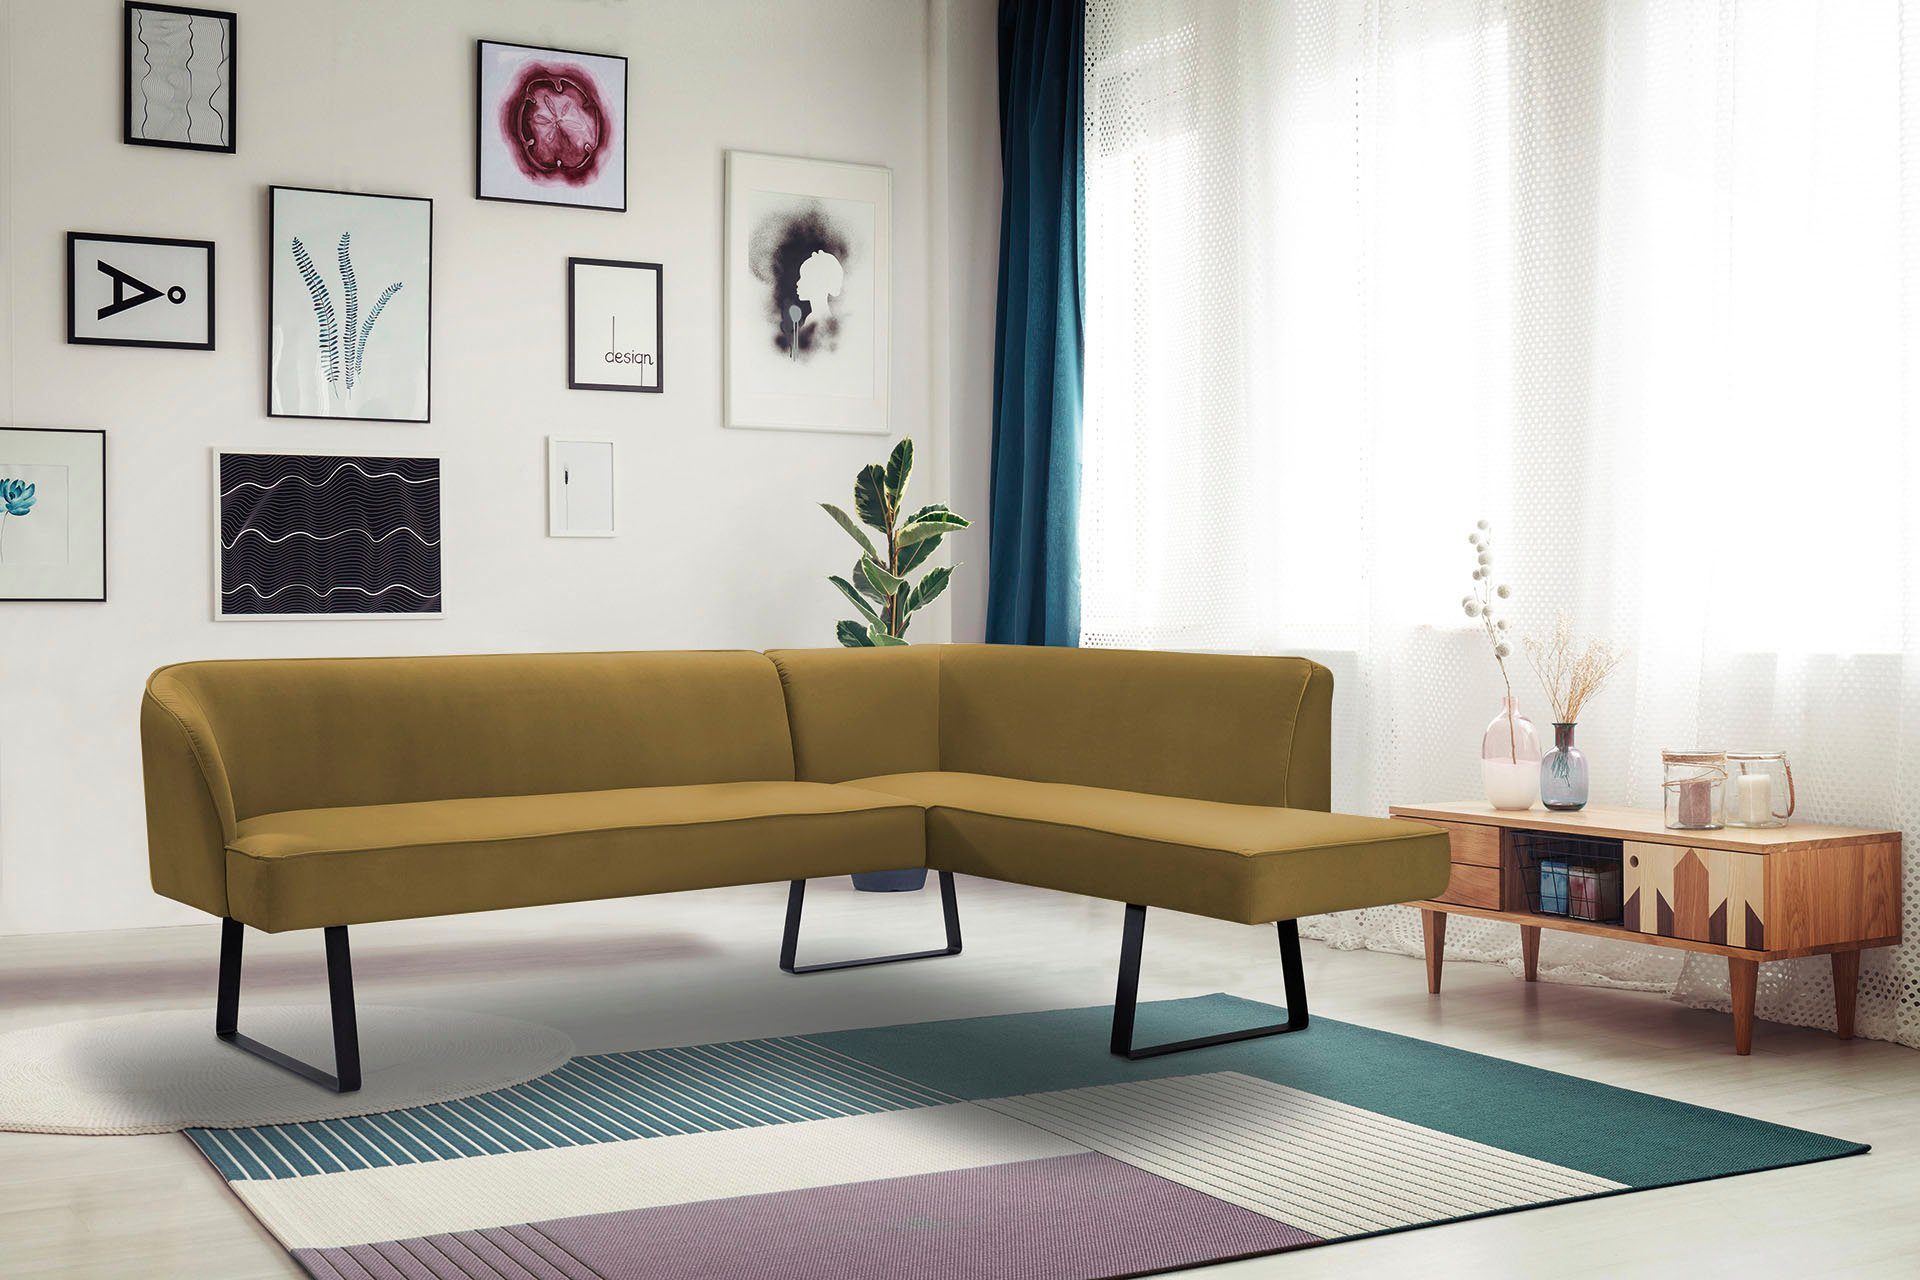 exxpo - sofa fashion Qualitäten Keder Eckbank verschiedenen und Bezug mit Americano, Metallfüßen, in